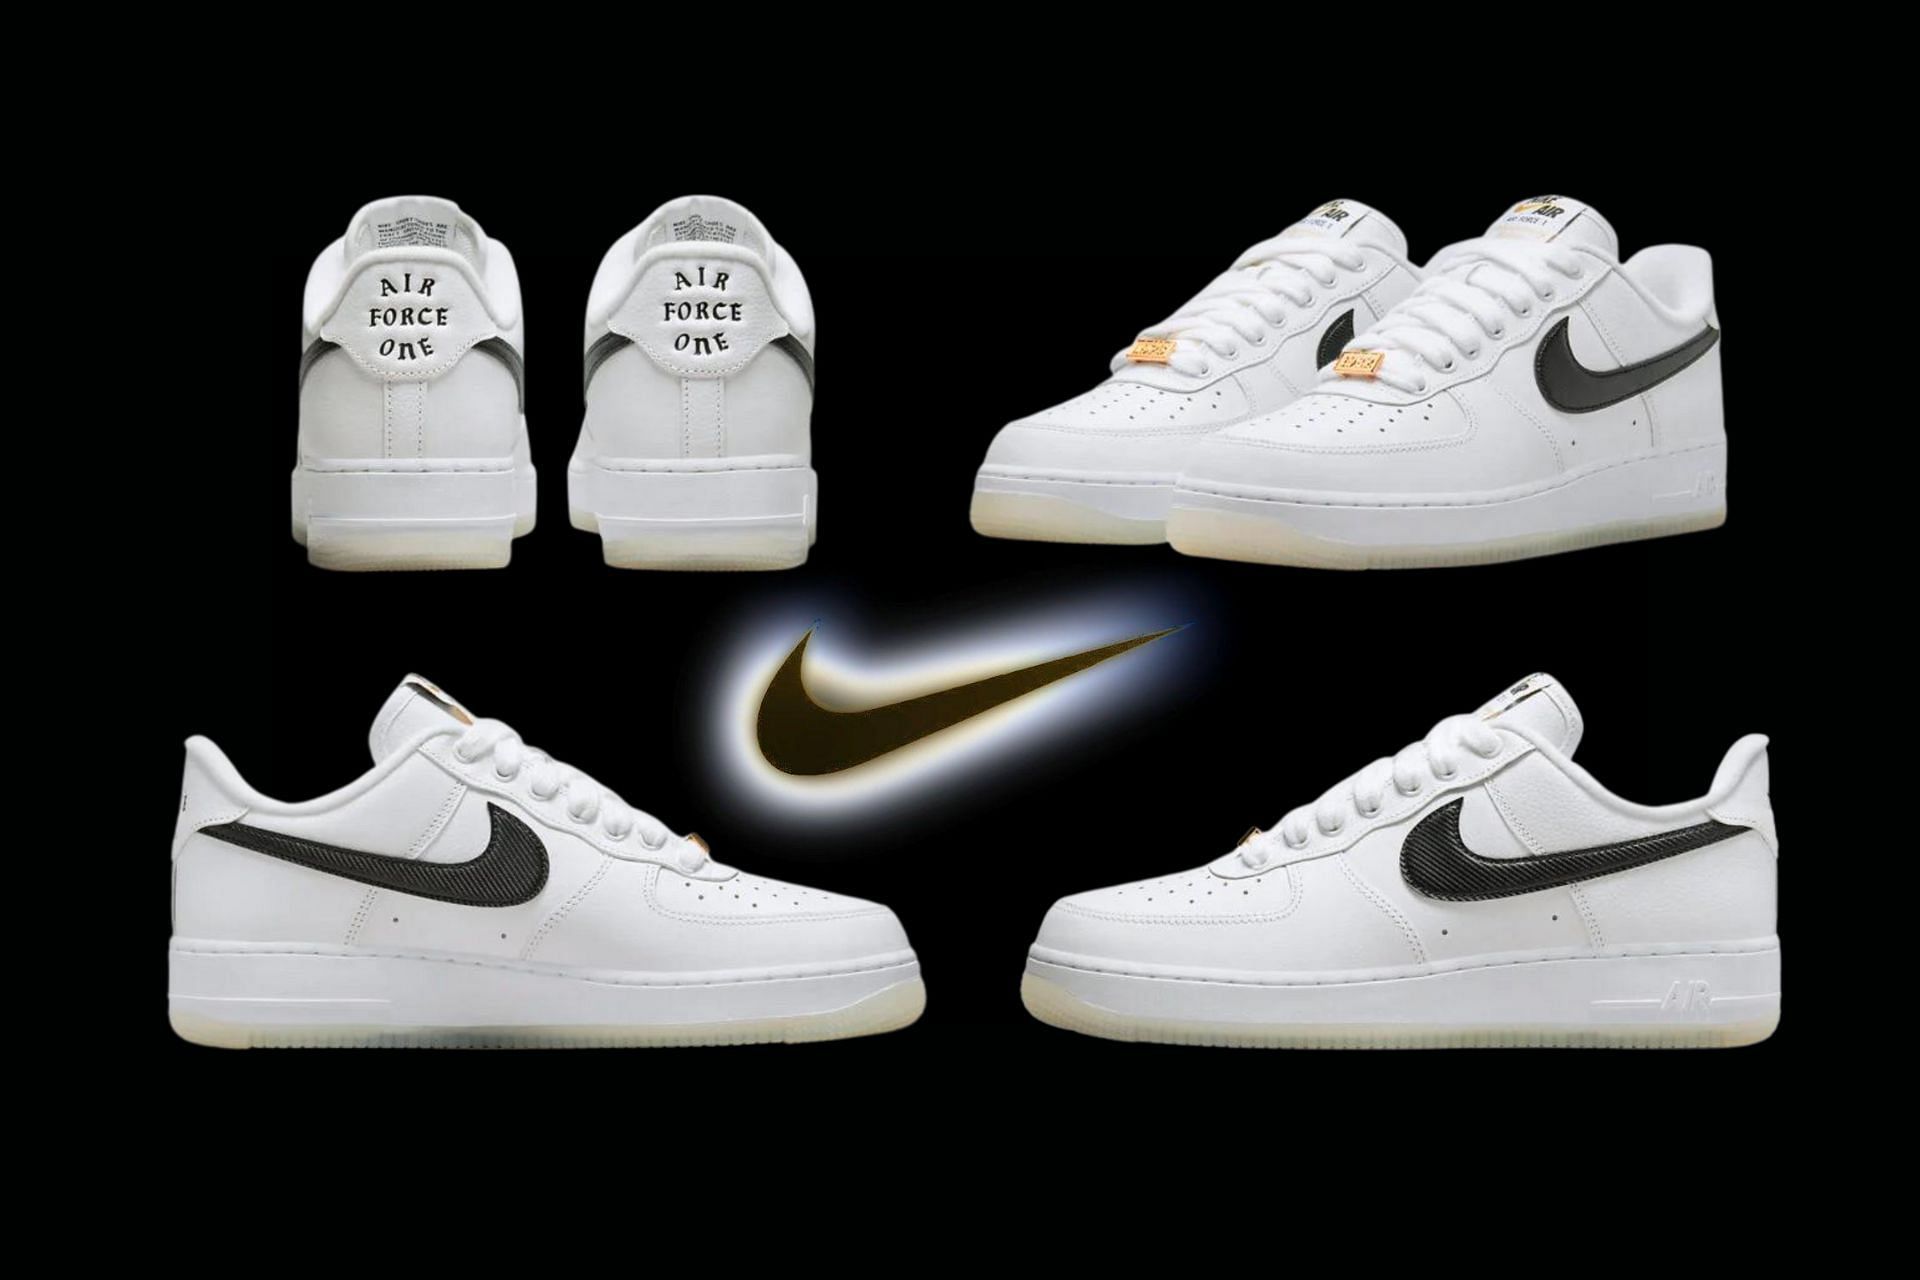 Nike Air Force 1 Low Bronx Origins shoes (Image via Sportskeeda)